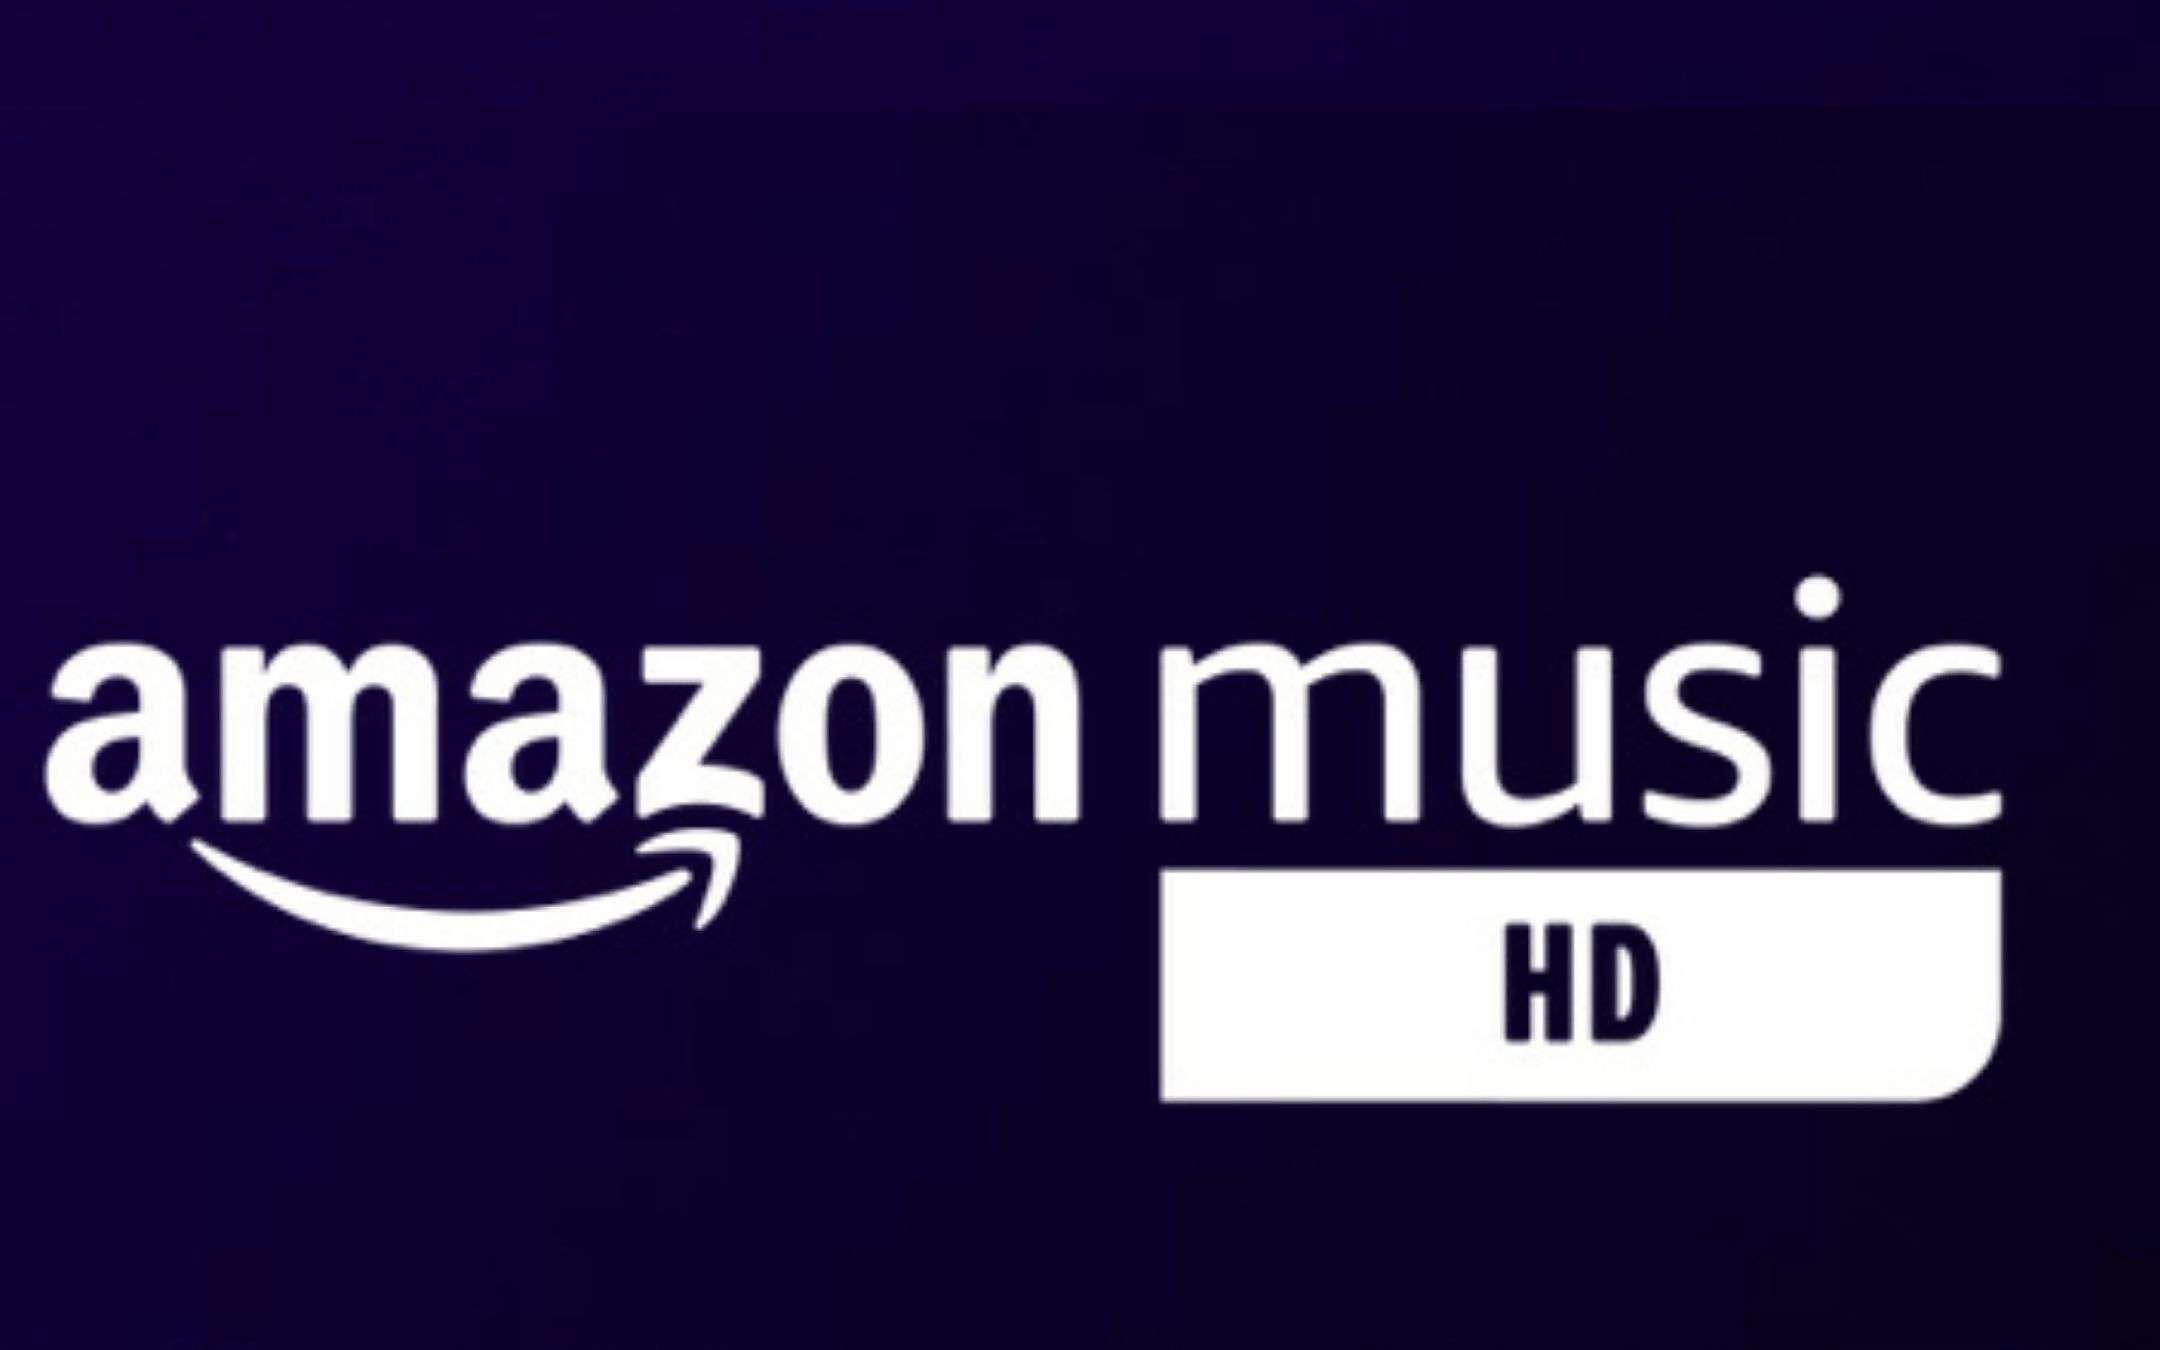 Amazon Music HD ufficiale: quanto costa, cosa offre